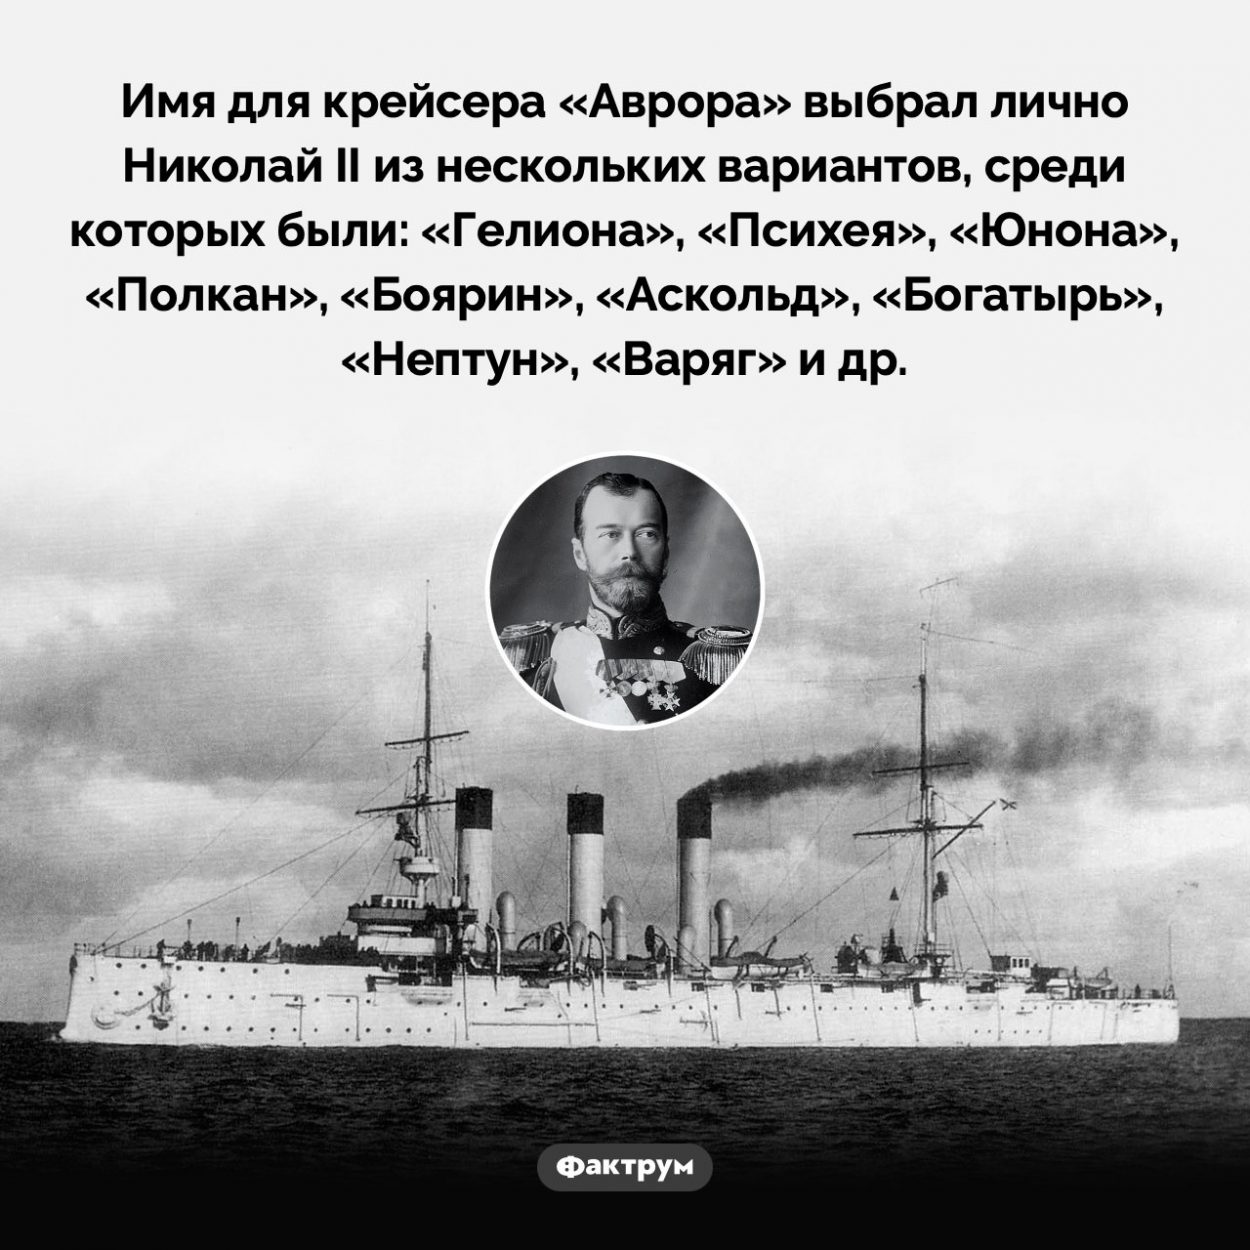 Николай II выбрал имя для крейсера «Аврора». Имя для крейсера «Аврора» выбрал лично Николай II из нескольких вариантов, среди которых были: «Гелиона», «Психея», «Юнона», «Полкан», «Боярин», «Аскольд», «Богатырь», «Нептун», «Варяг» и др.